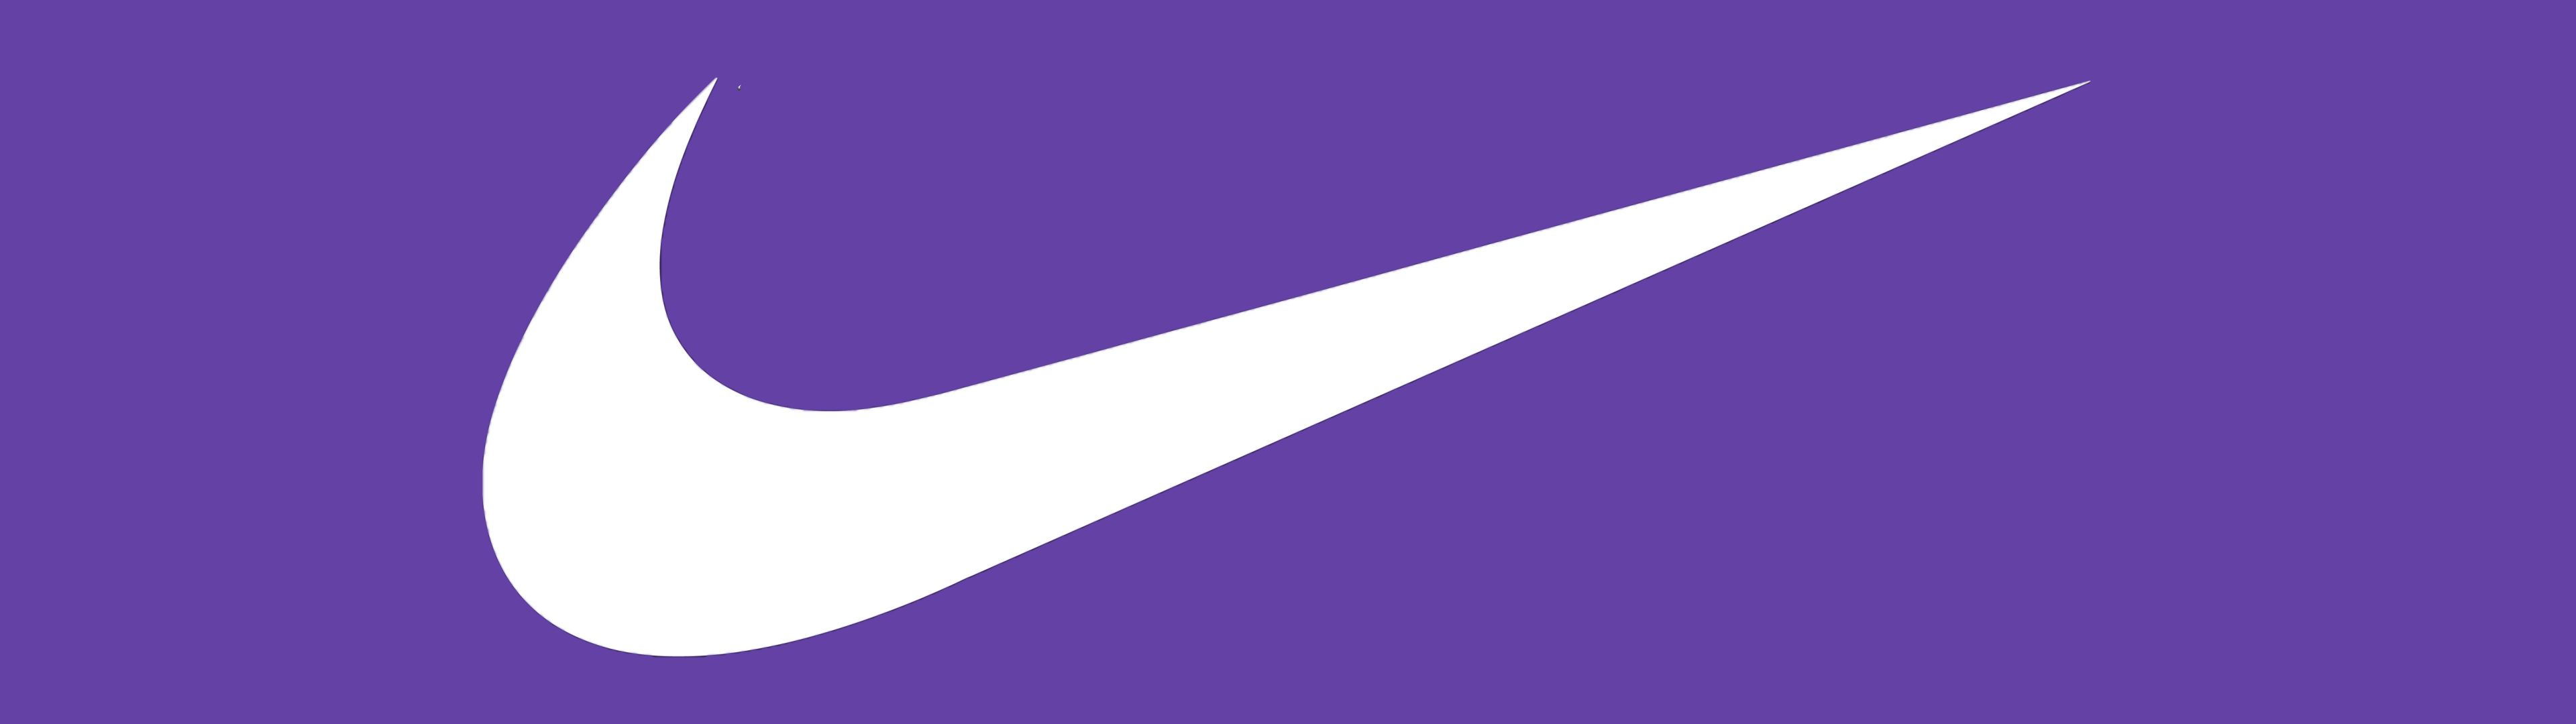 Nike Wallpaper 4K, Purple background, 5K, 8K, Simple